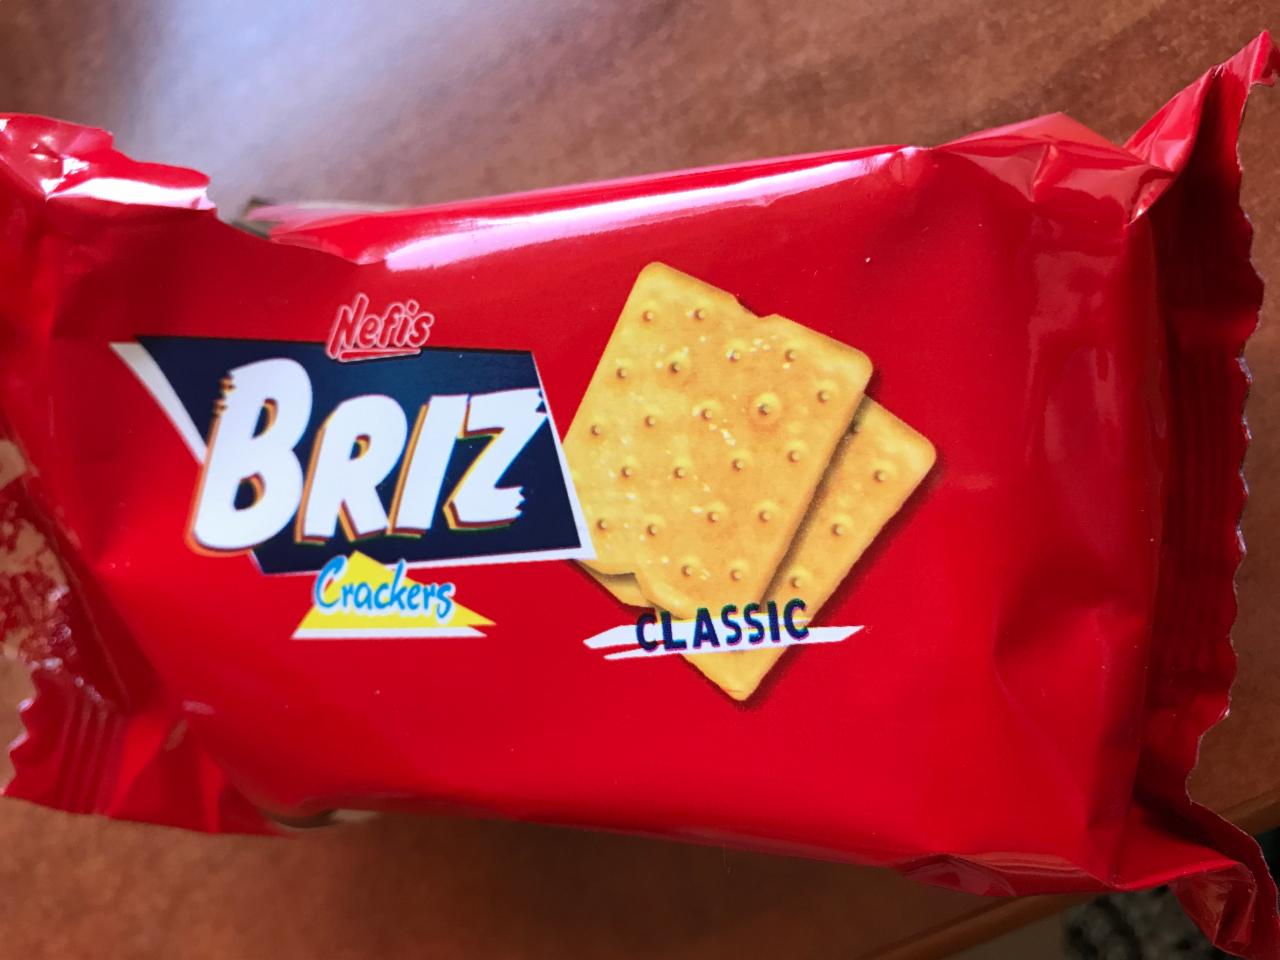 Fotografie - Briz Crackers classic nefis